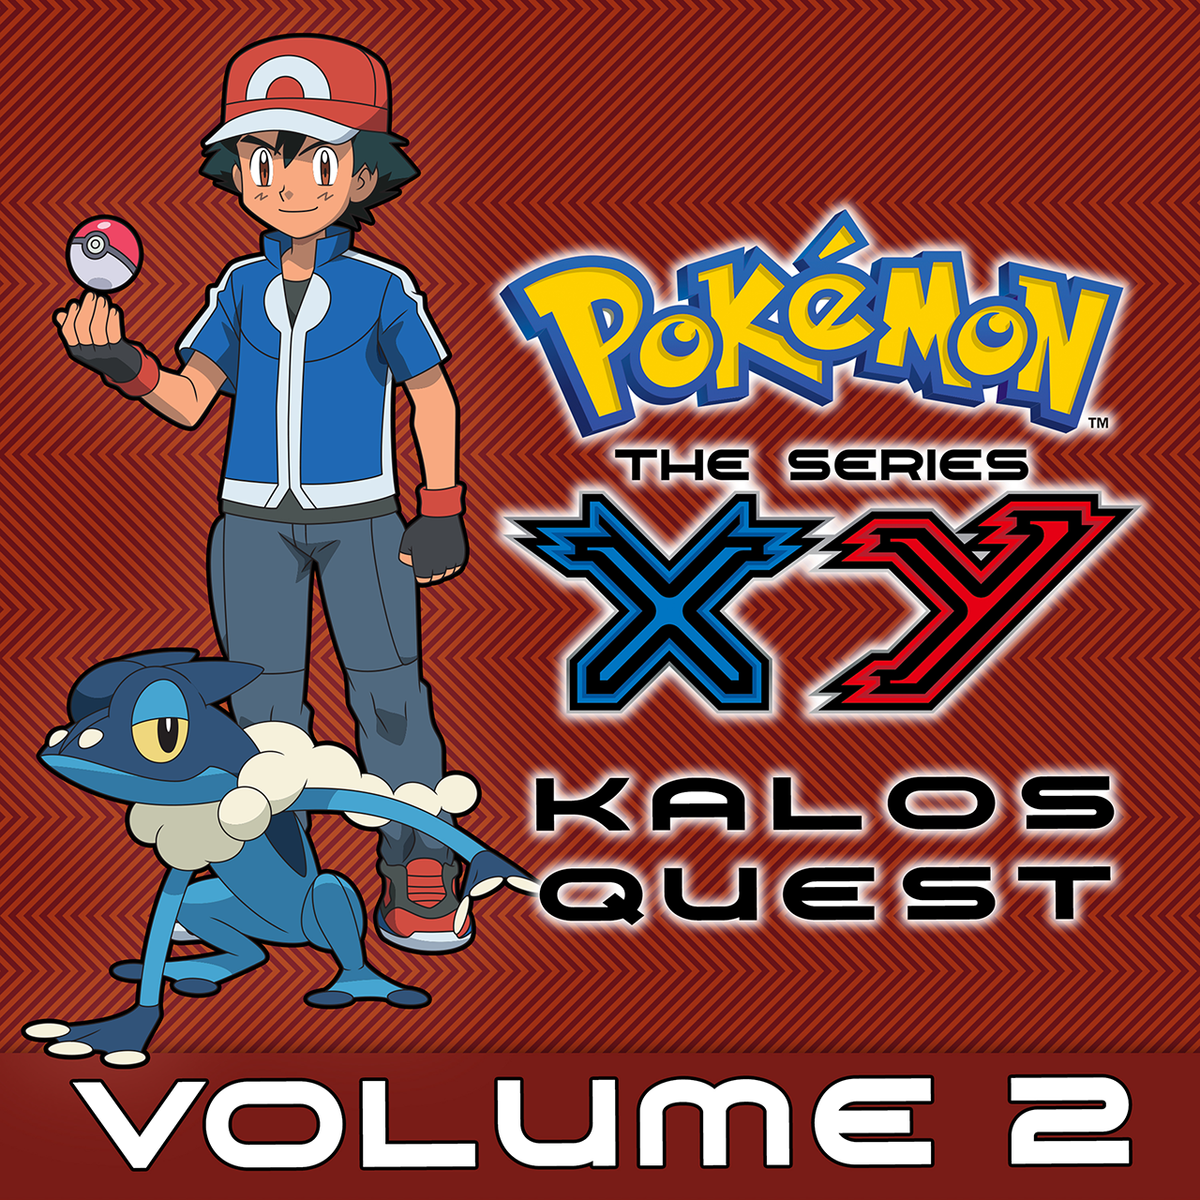 Pokémon the Series: XY Kalos Quest Comes to Pokémon TV June 2nd, 2023